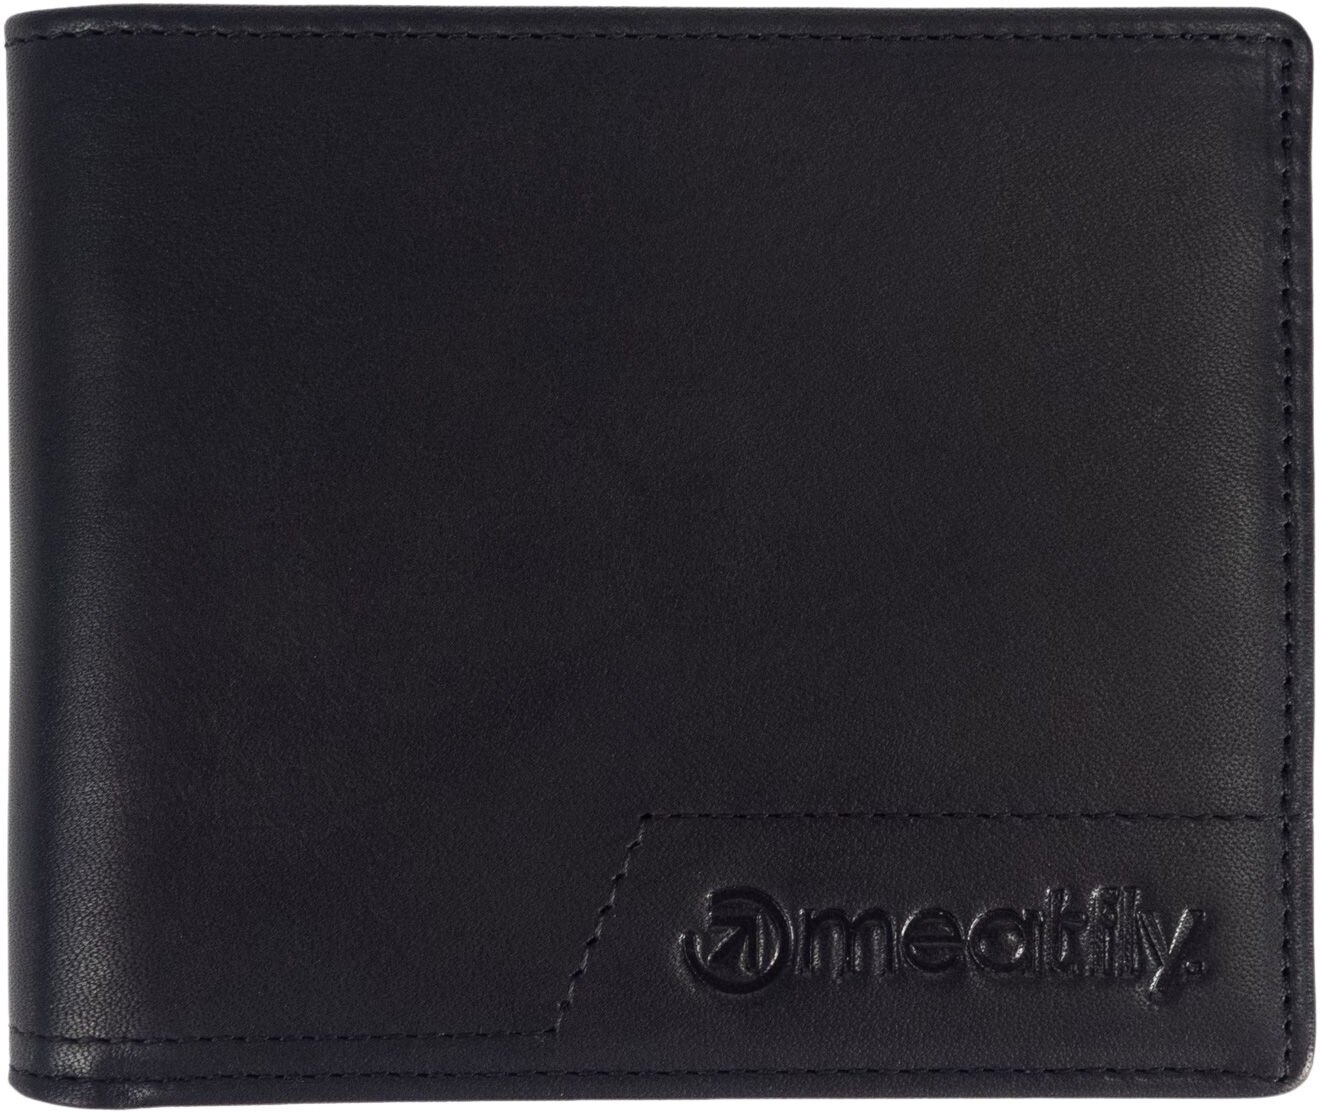 Portefeuille, sac bandoulière Meatfly Eliot Premium Leather Wallet Black Portefeuille (CMS)